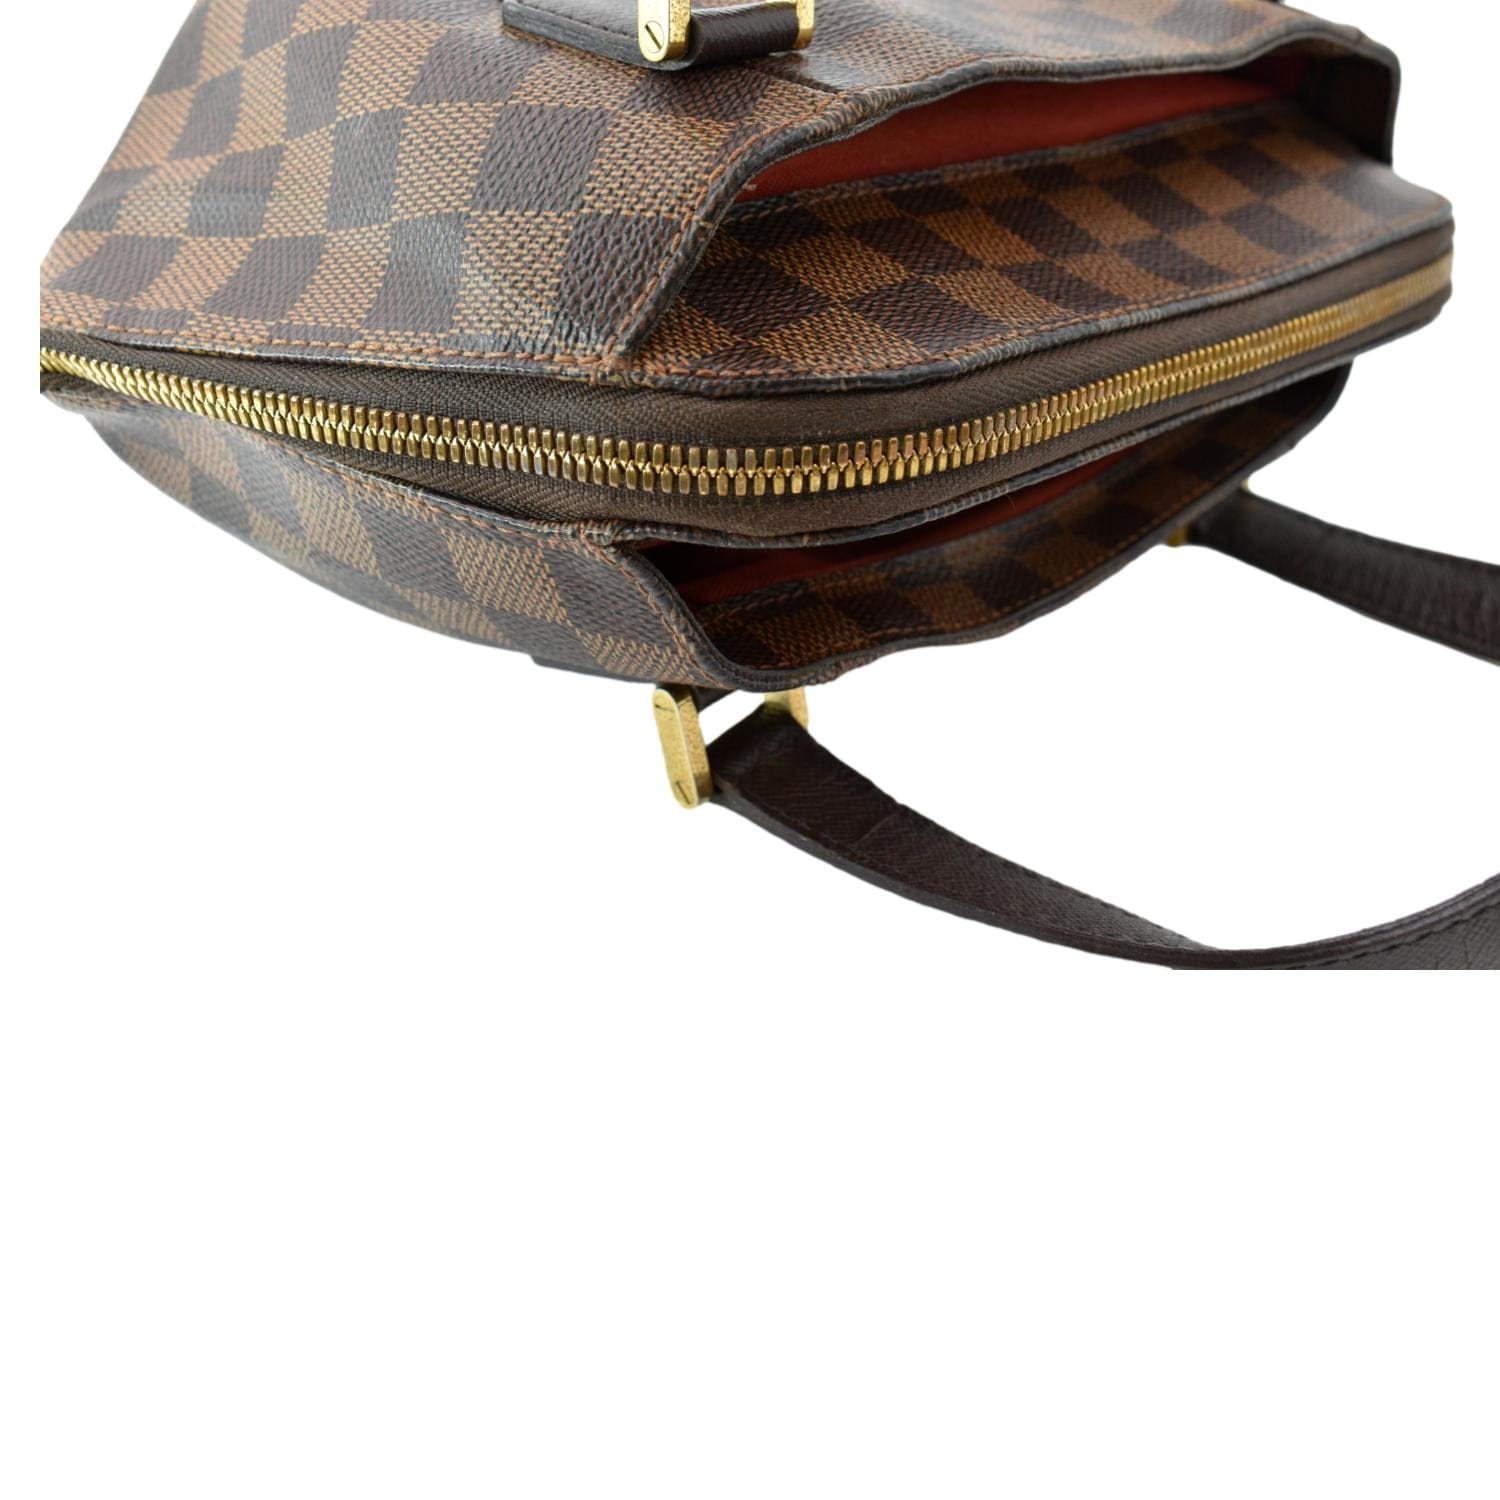 Auth Louis Vuitton Damier Ebene Belem PM N51173 Hand bag 0B270190n"